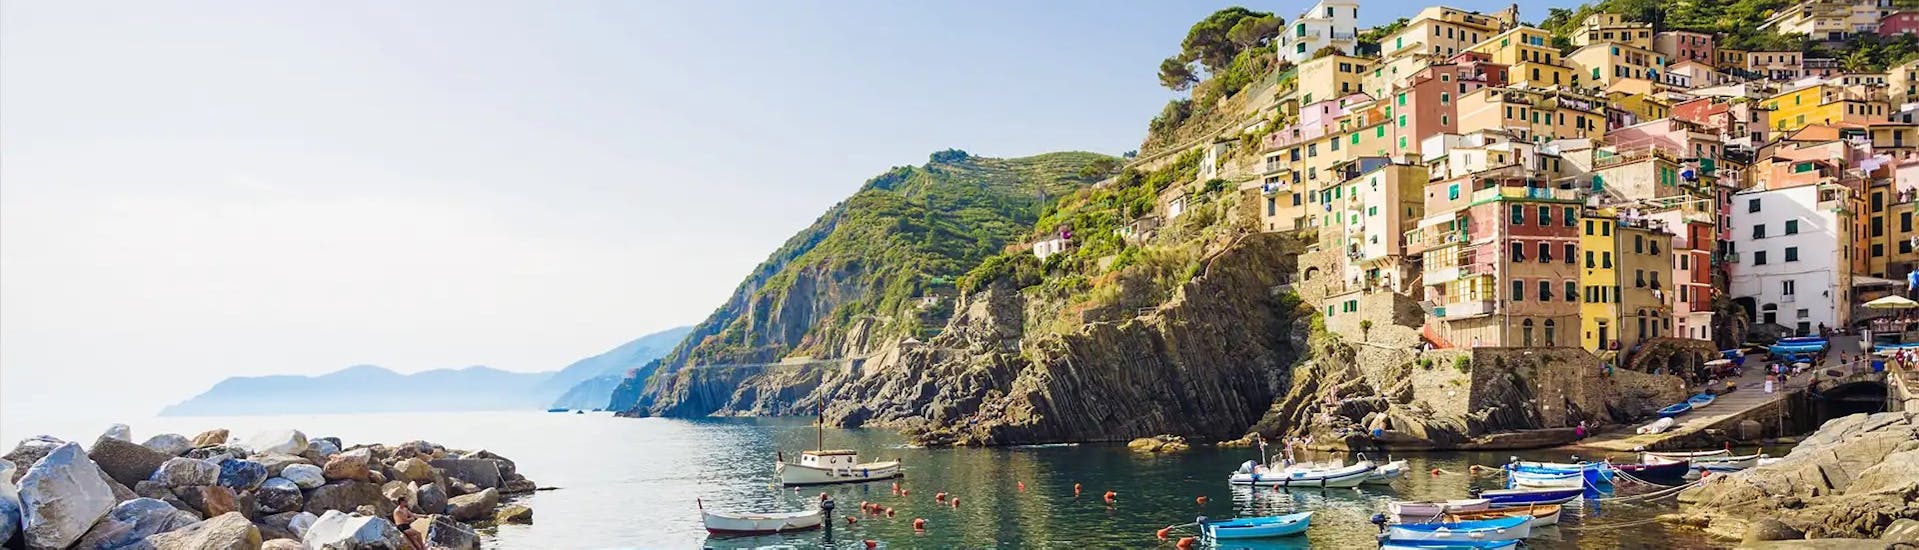 Las vistas que podrá admirar durante la excursión en barco desde La Spezia a Cinque Terre, Porto Venere y la Gruta de Lord Byron con 5 Terre Boat Experience.